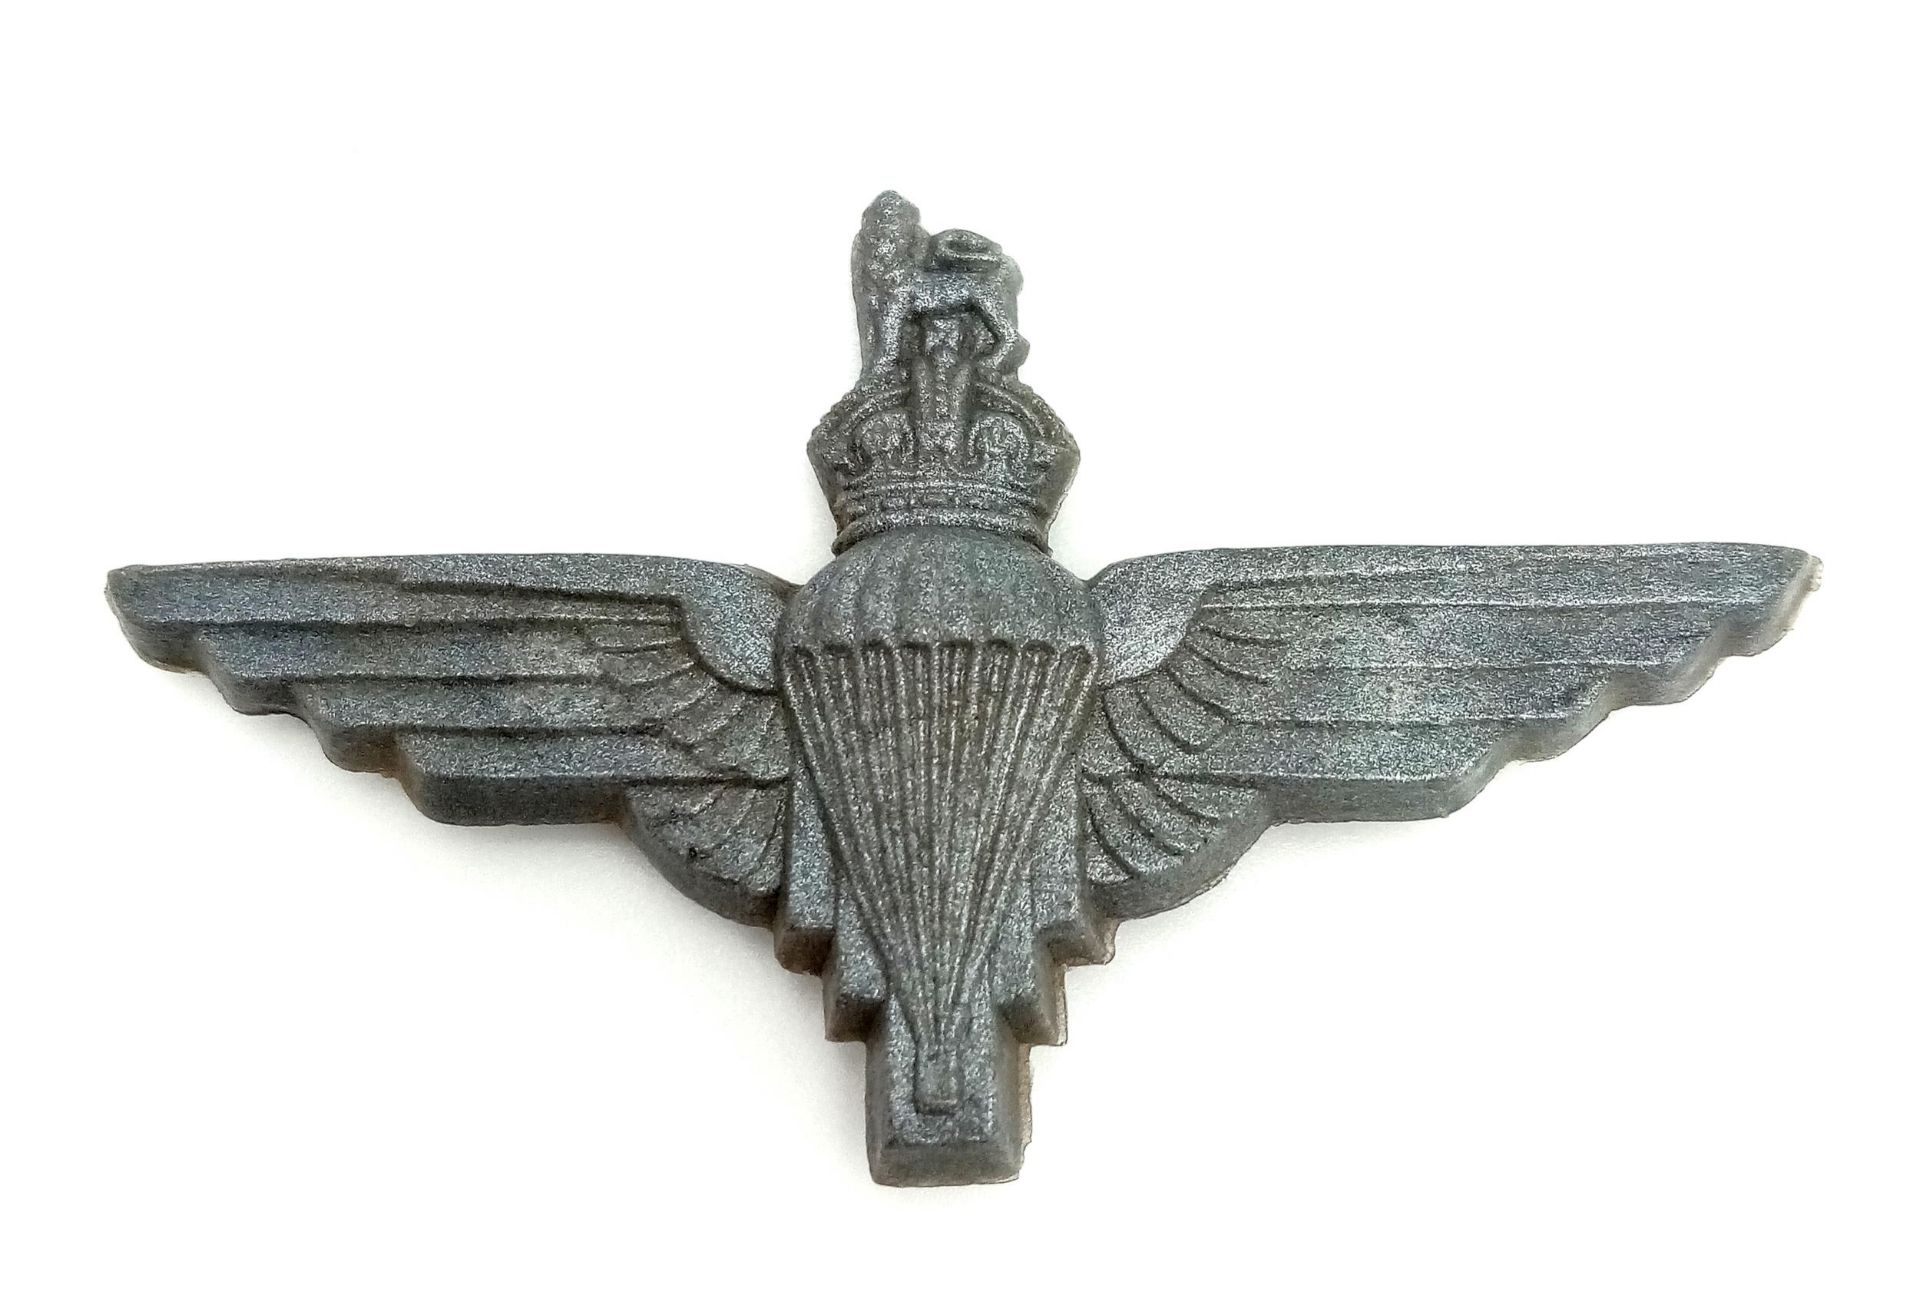 WW2 Plastic (Cellulose Acetate) Economy Issue Parachute Regiment Cap Badge.